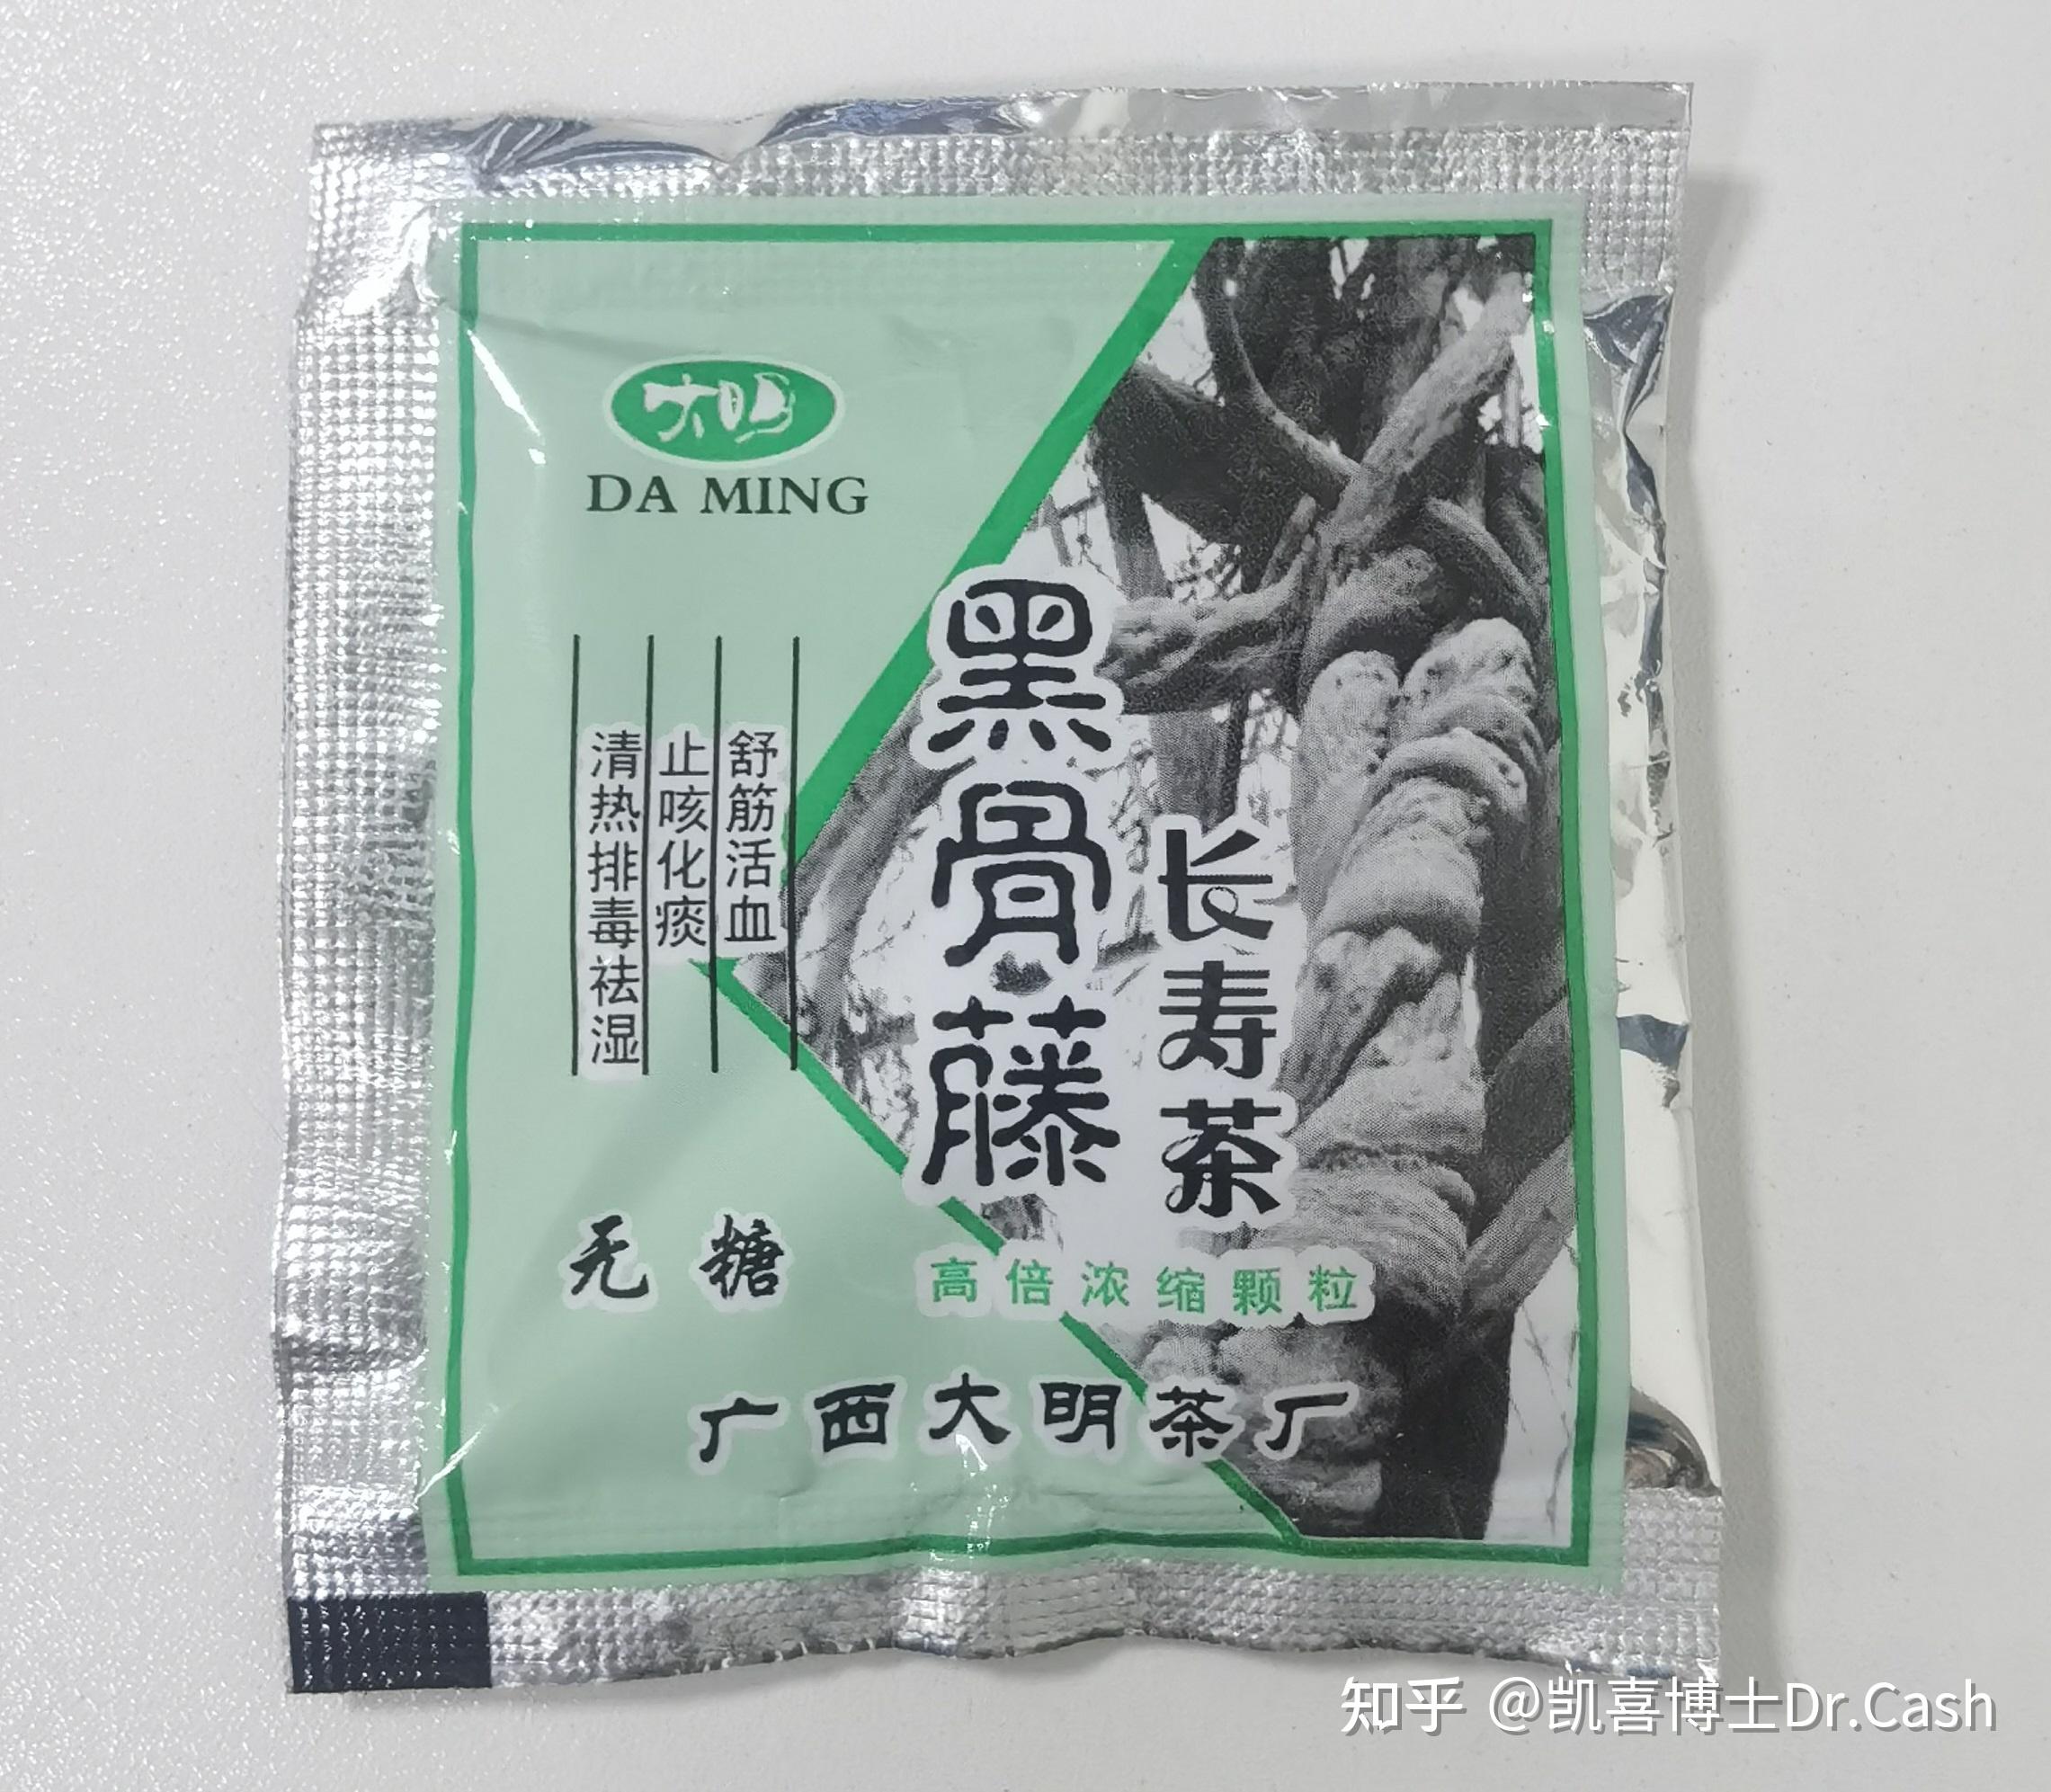 广西黑骨藤长寿茶官网图片